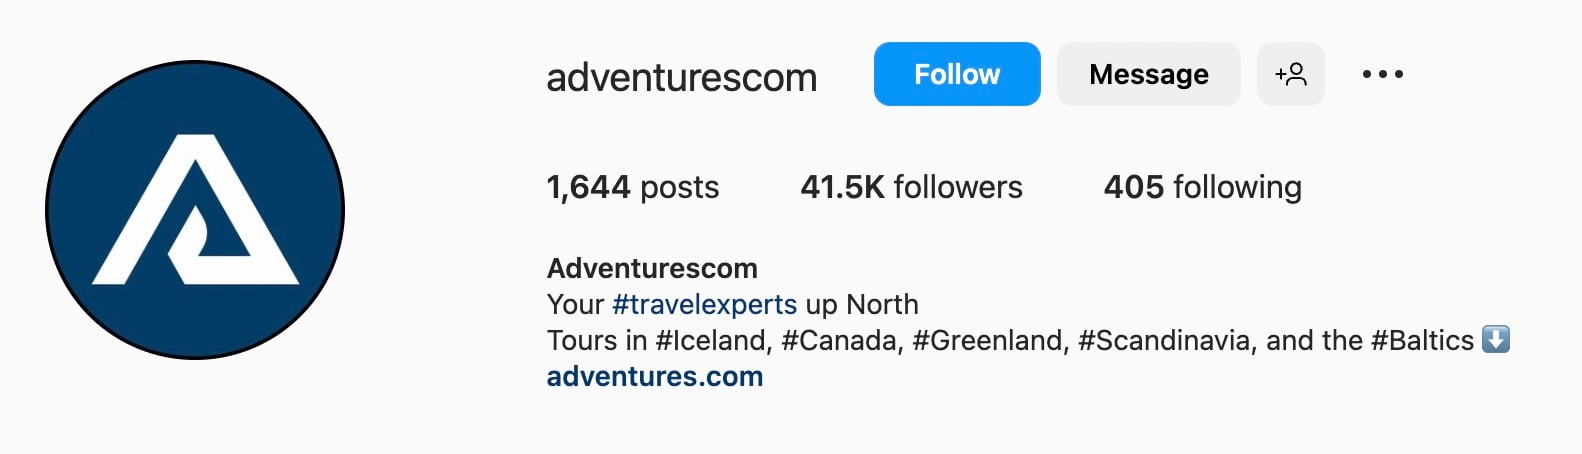 Good Instagram bio ideas for travel, adventurescom